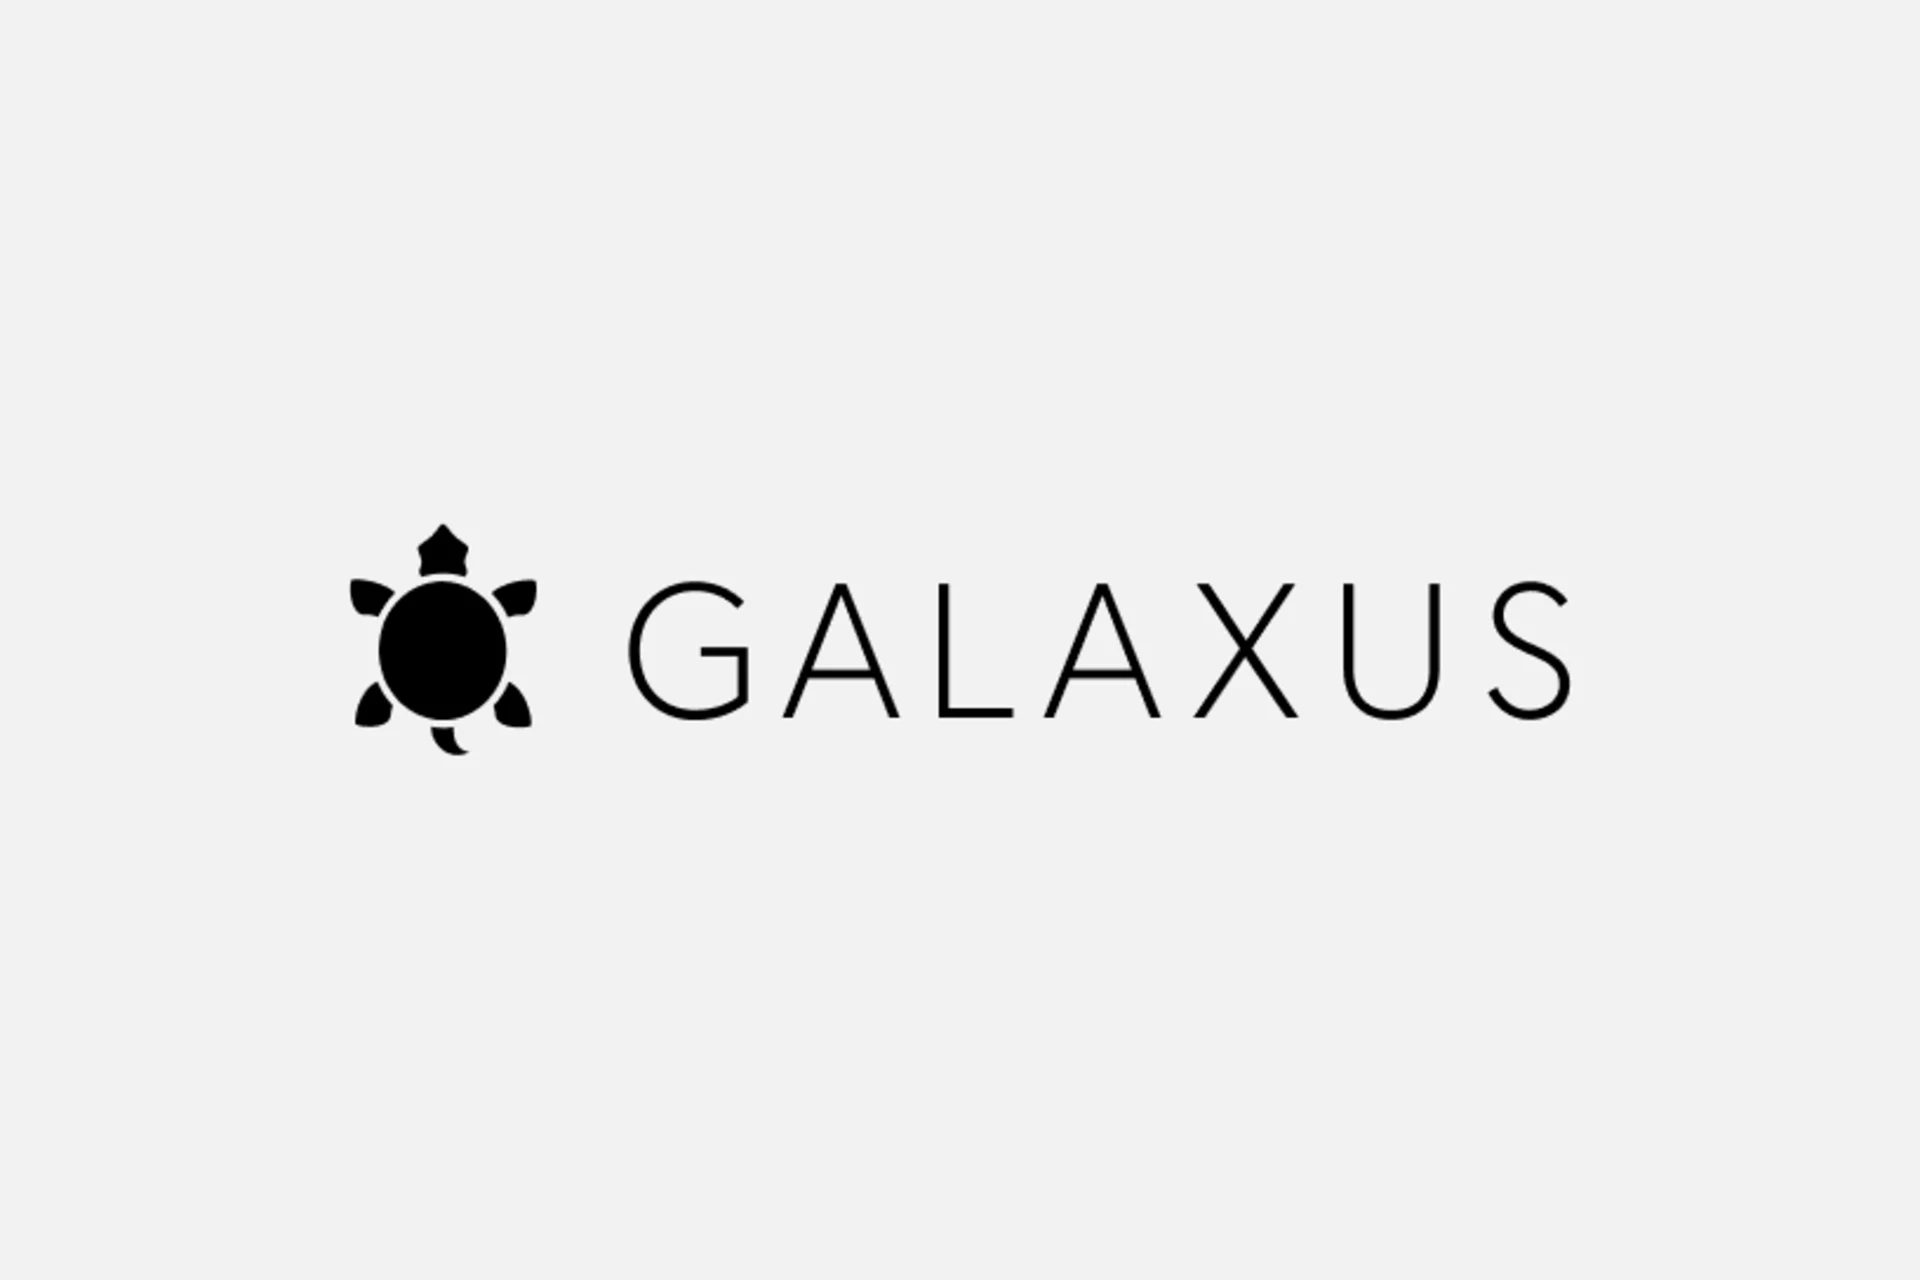 Logo du Galaxus